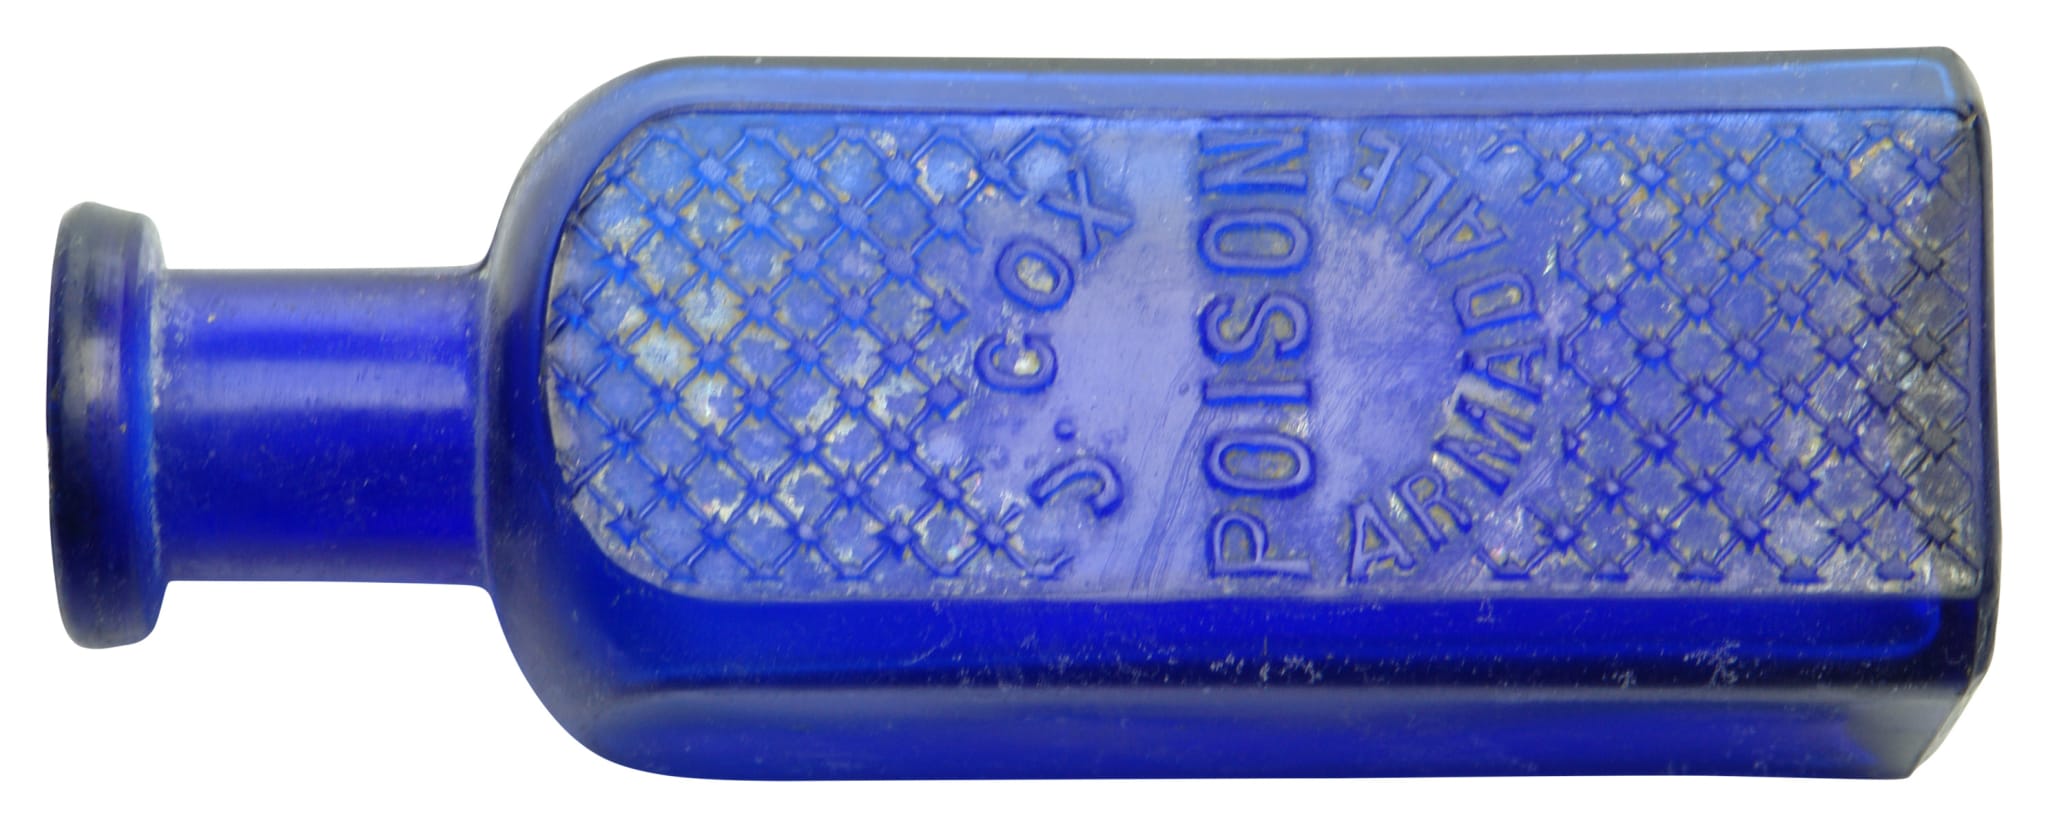 Cox Poison Armadale Cobalt Blue Poison Bottle